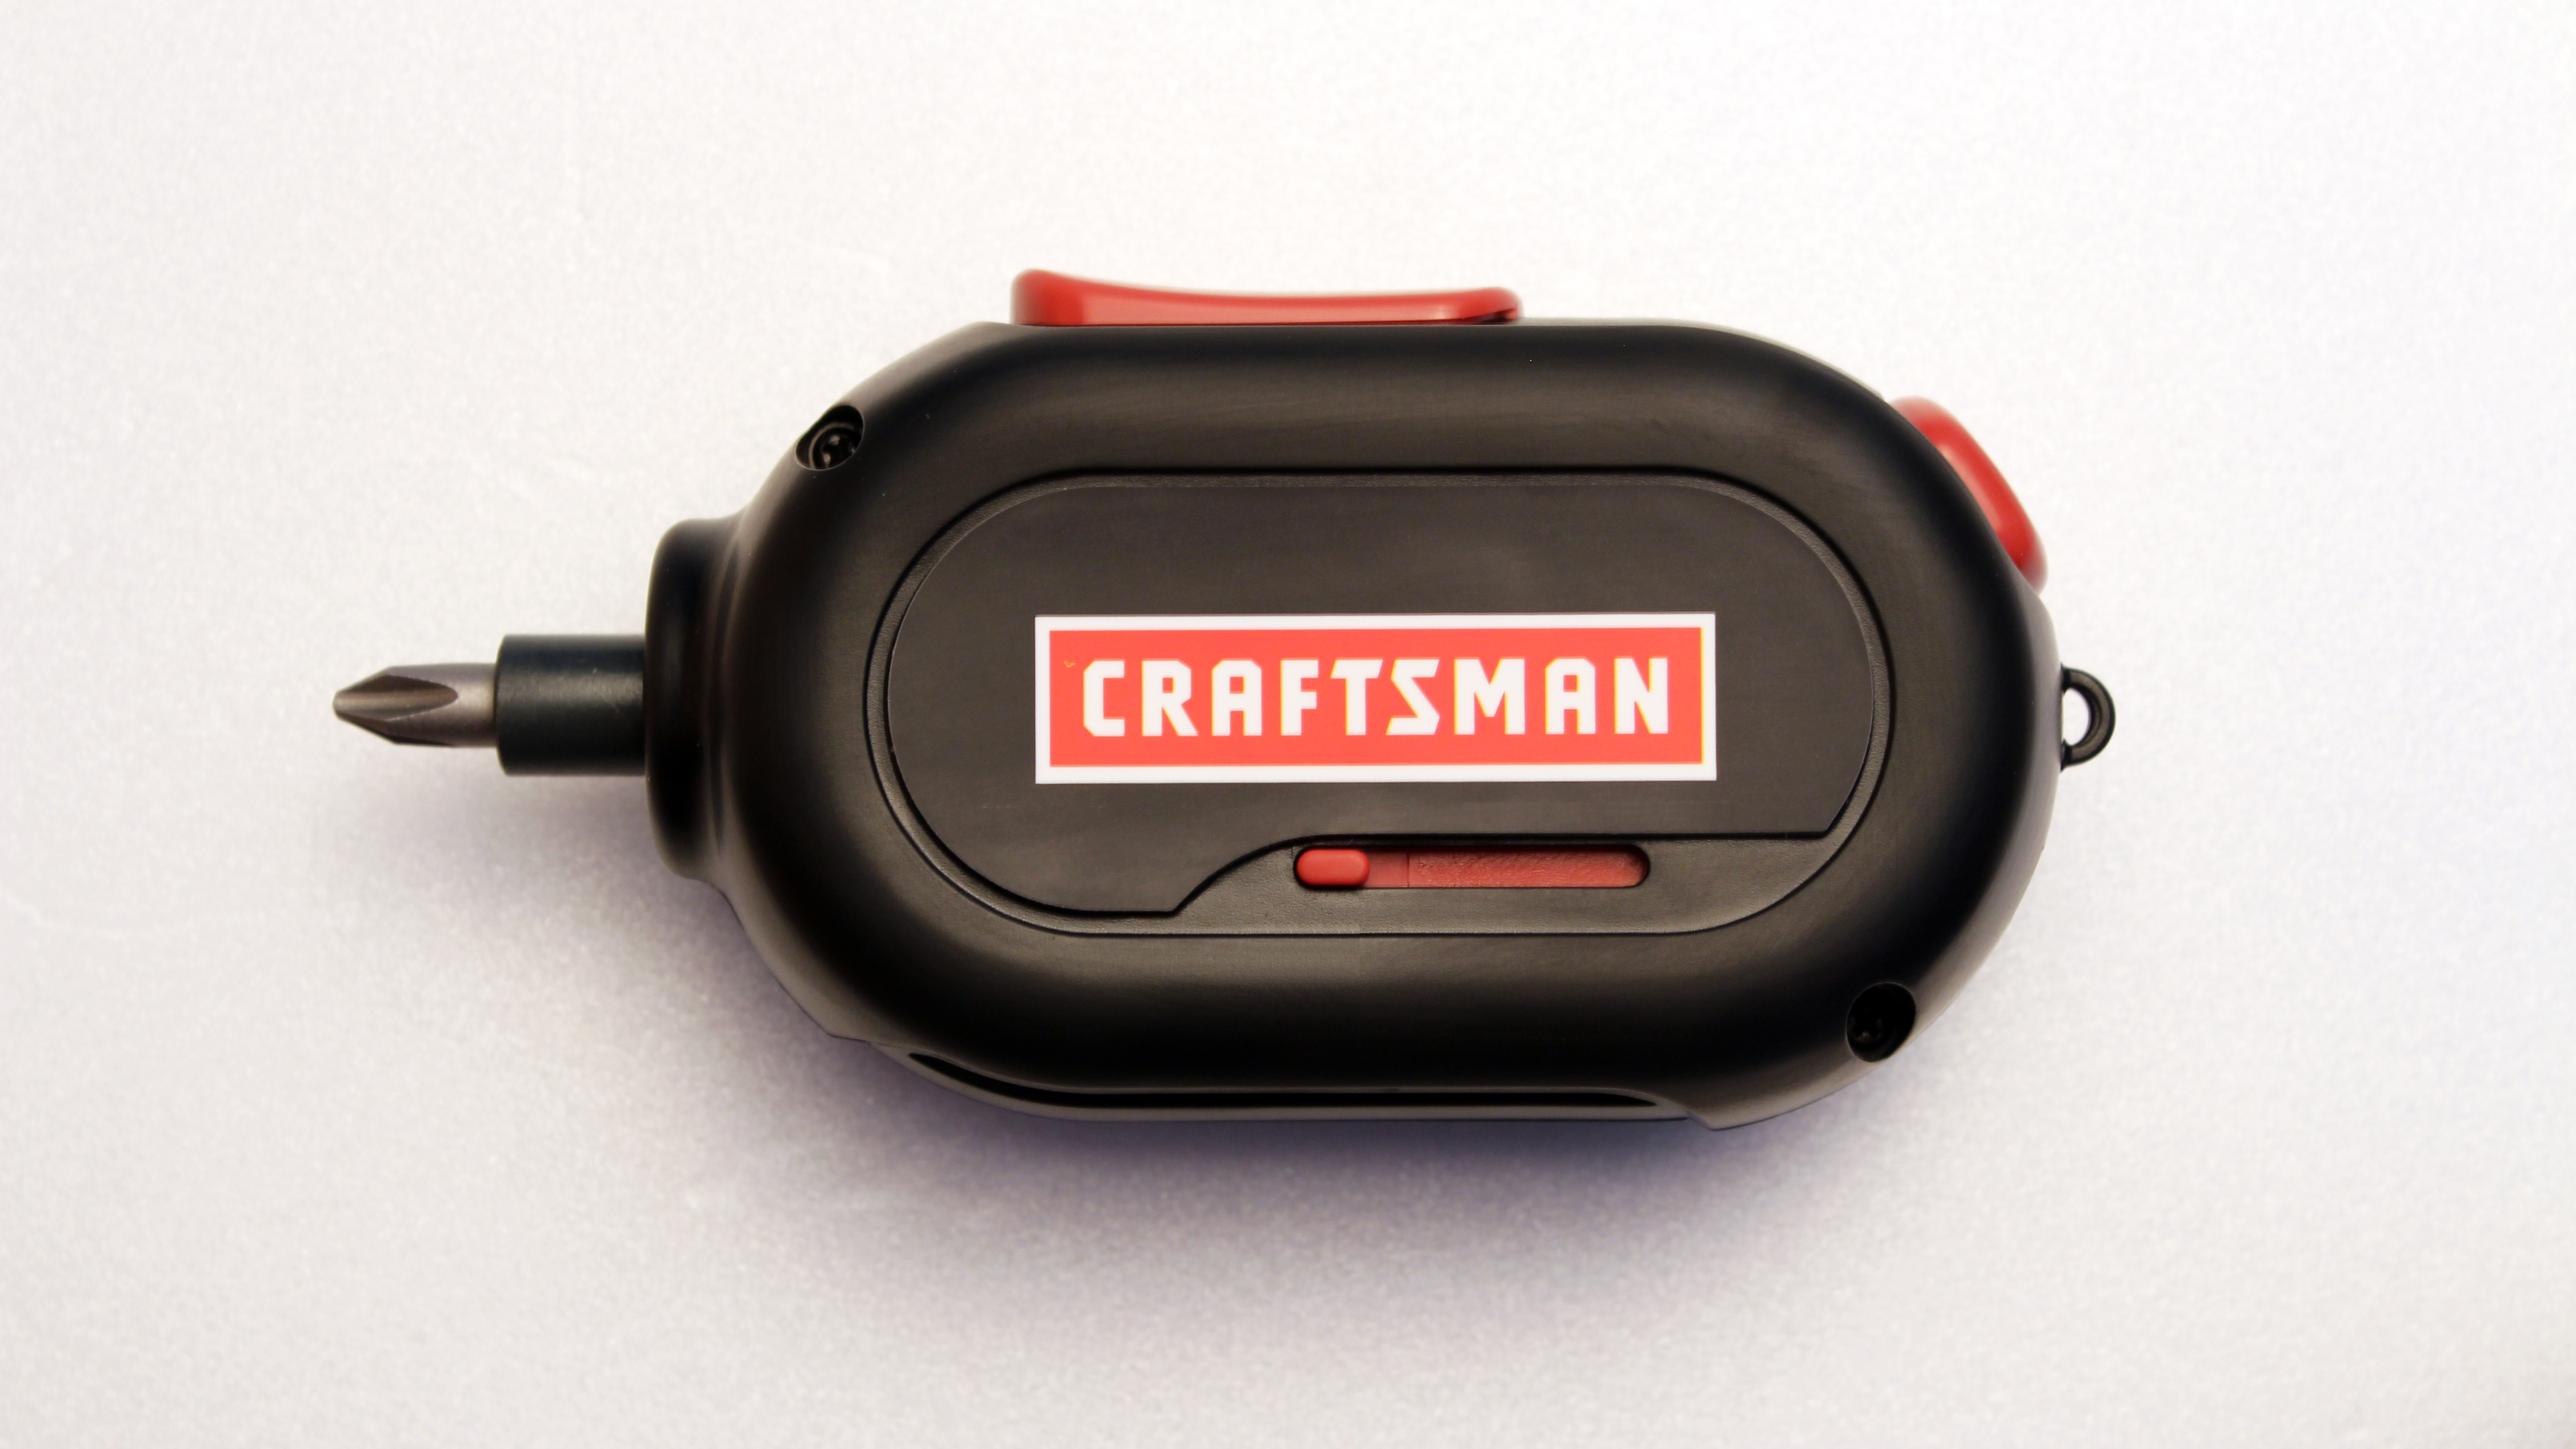 Craftsman Black 3.7V Cordless Screwdriver